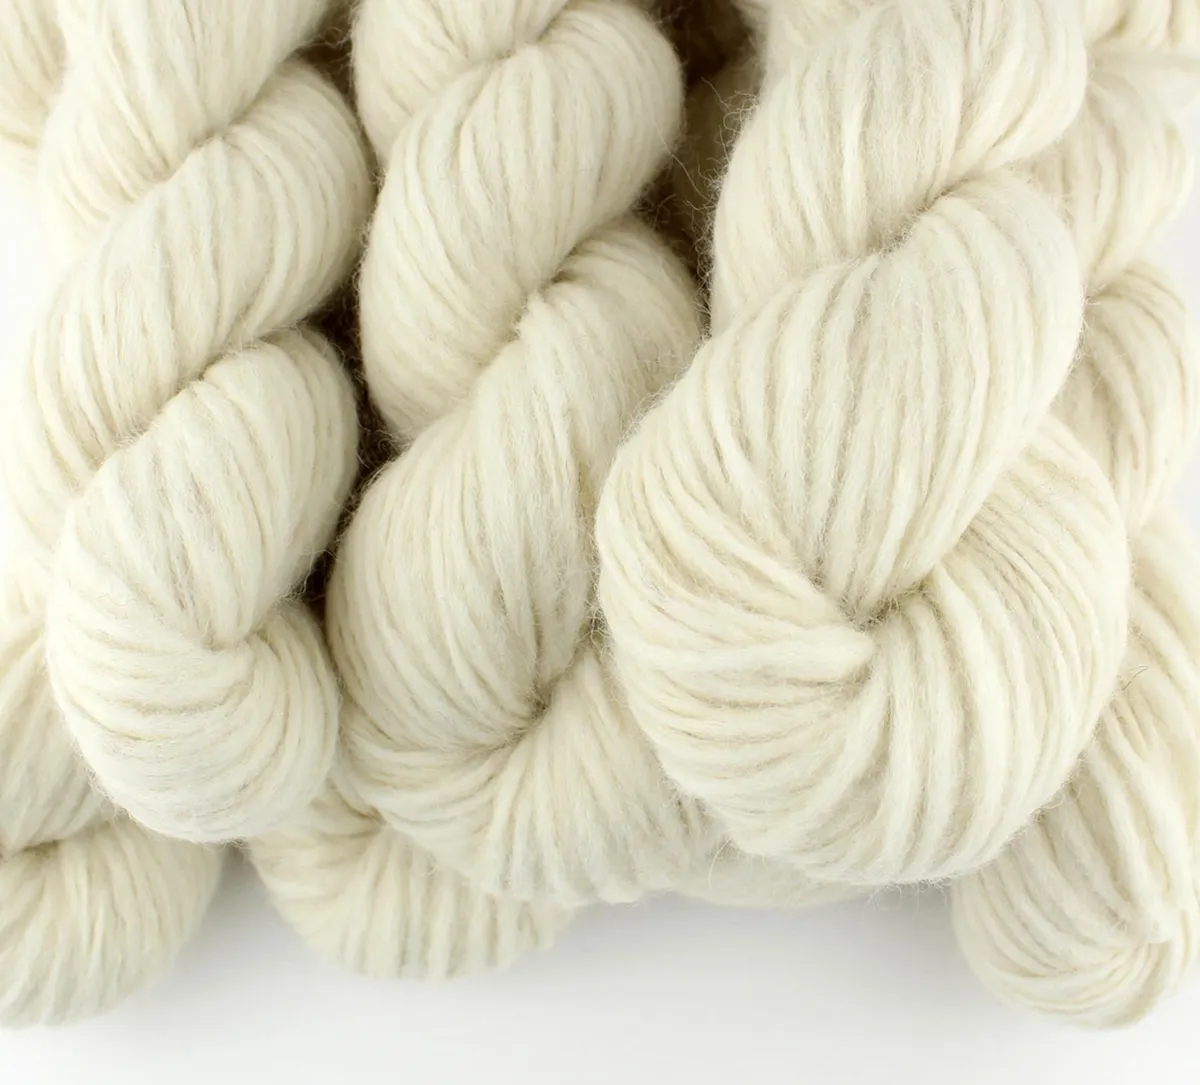 Fluffy chunky alpaca yarn